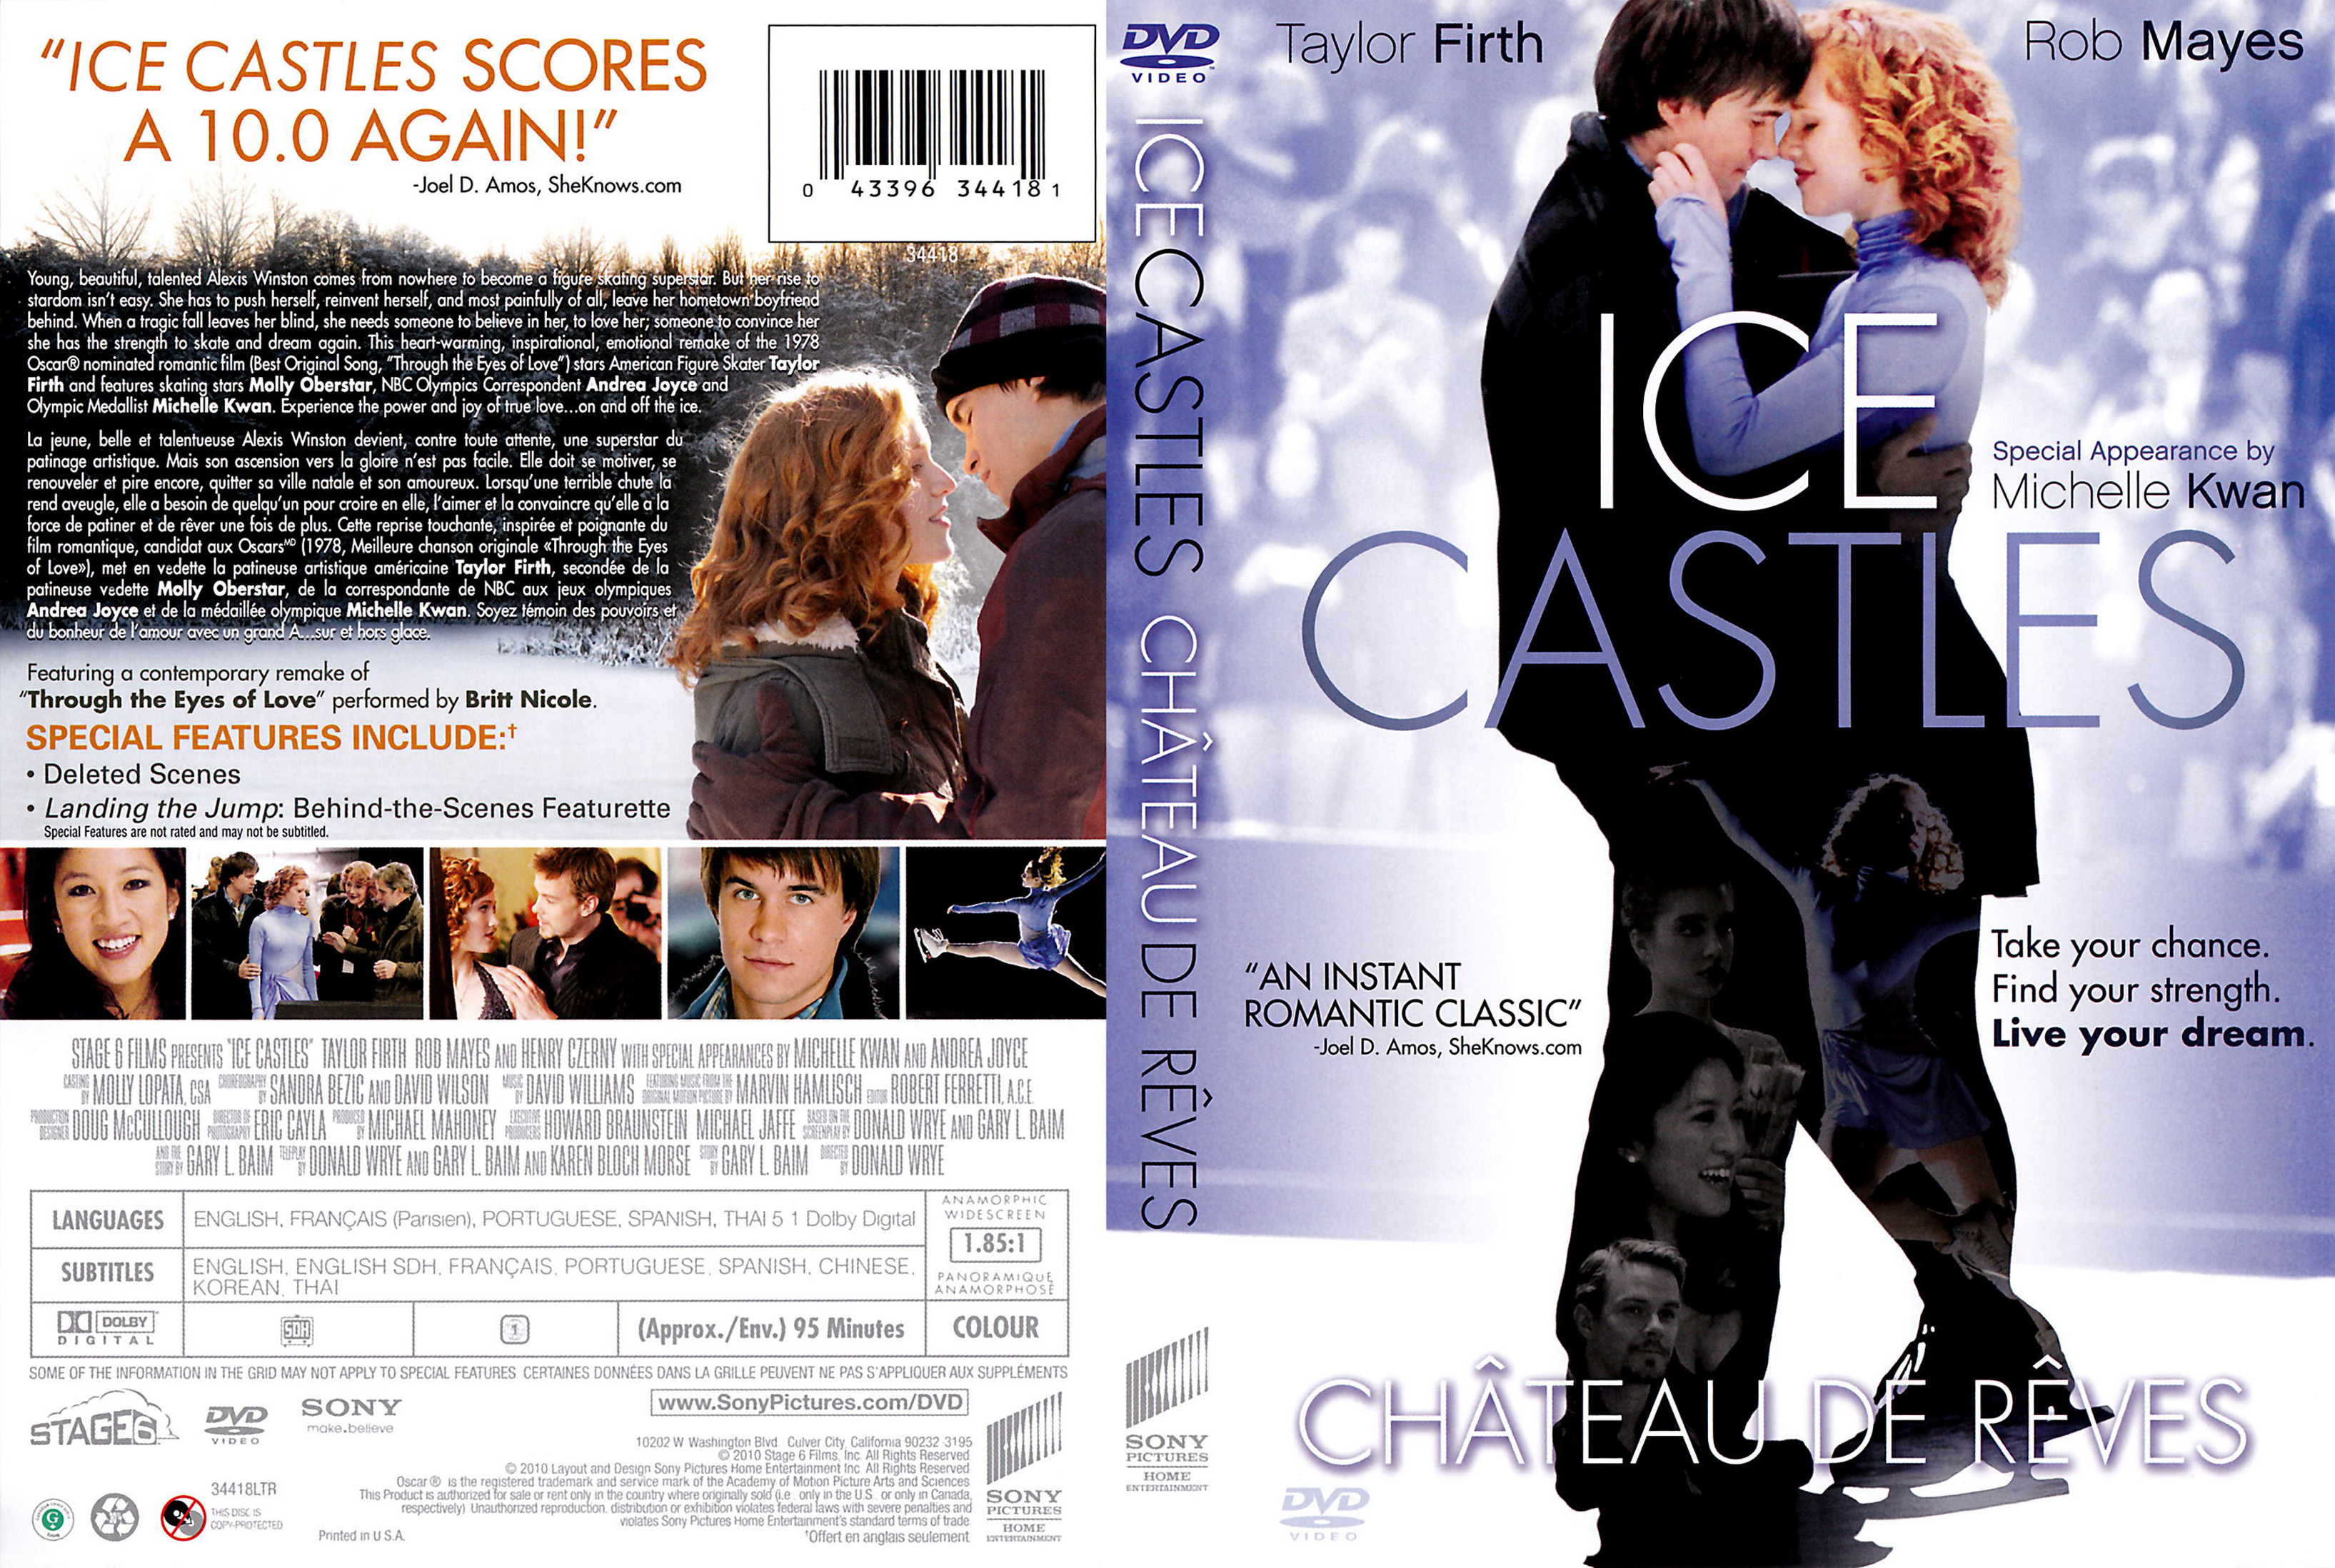 Jaquette DVD Ice castles - Chateau de reves (Canadienne)